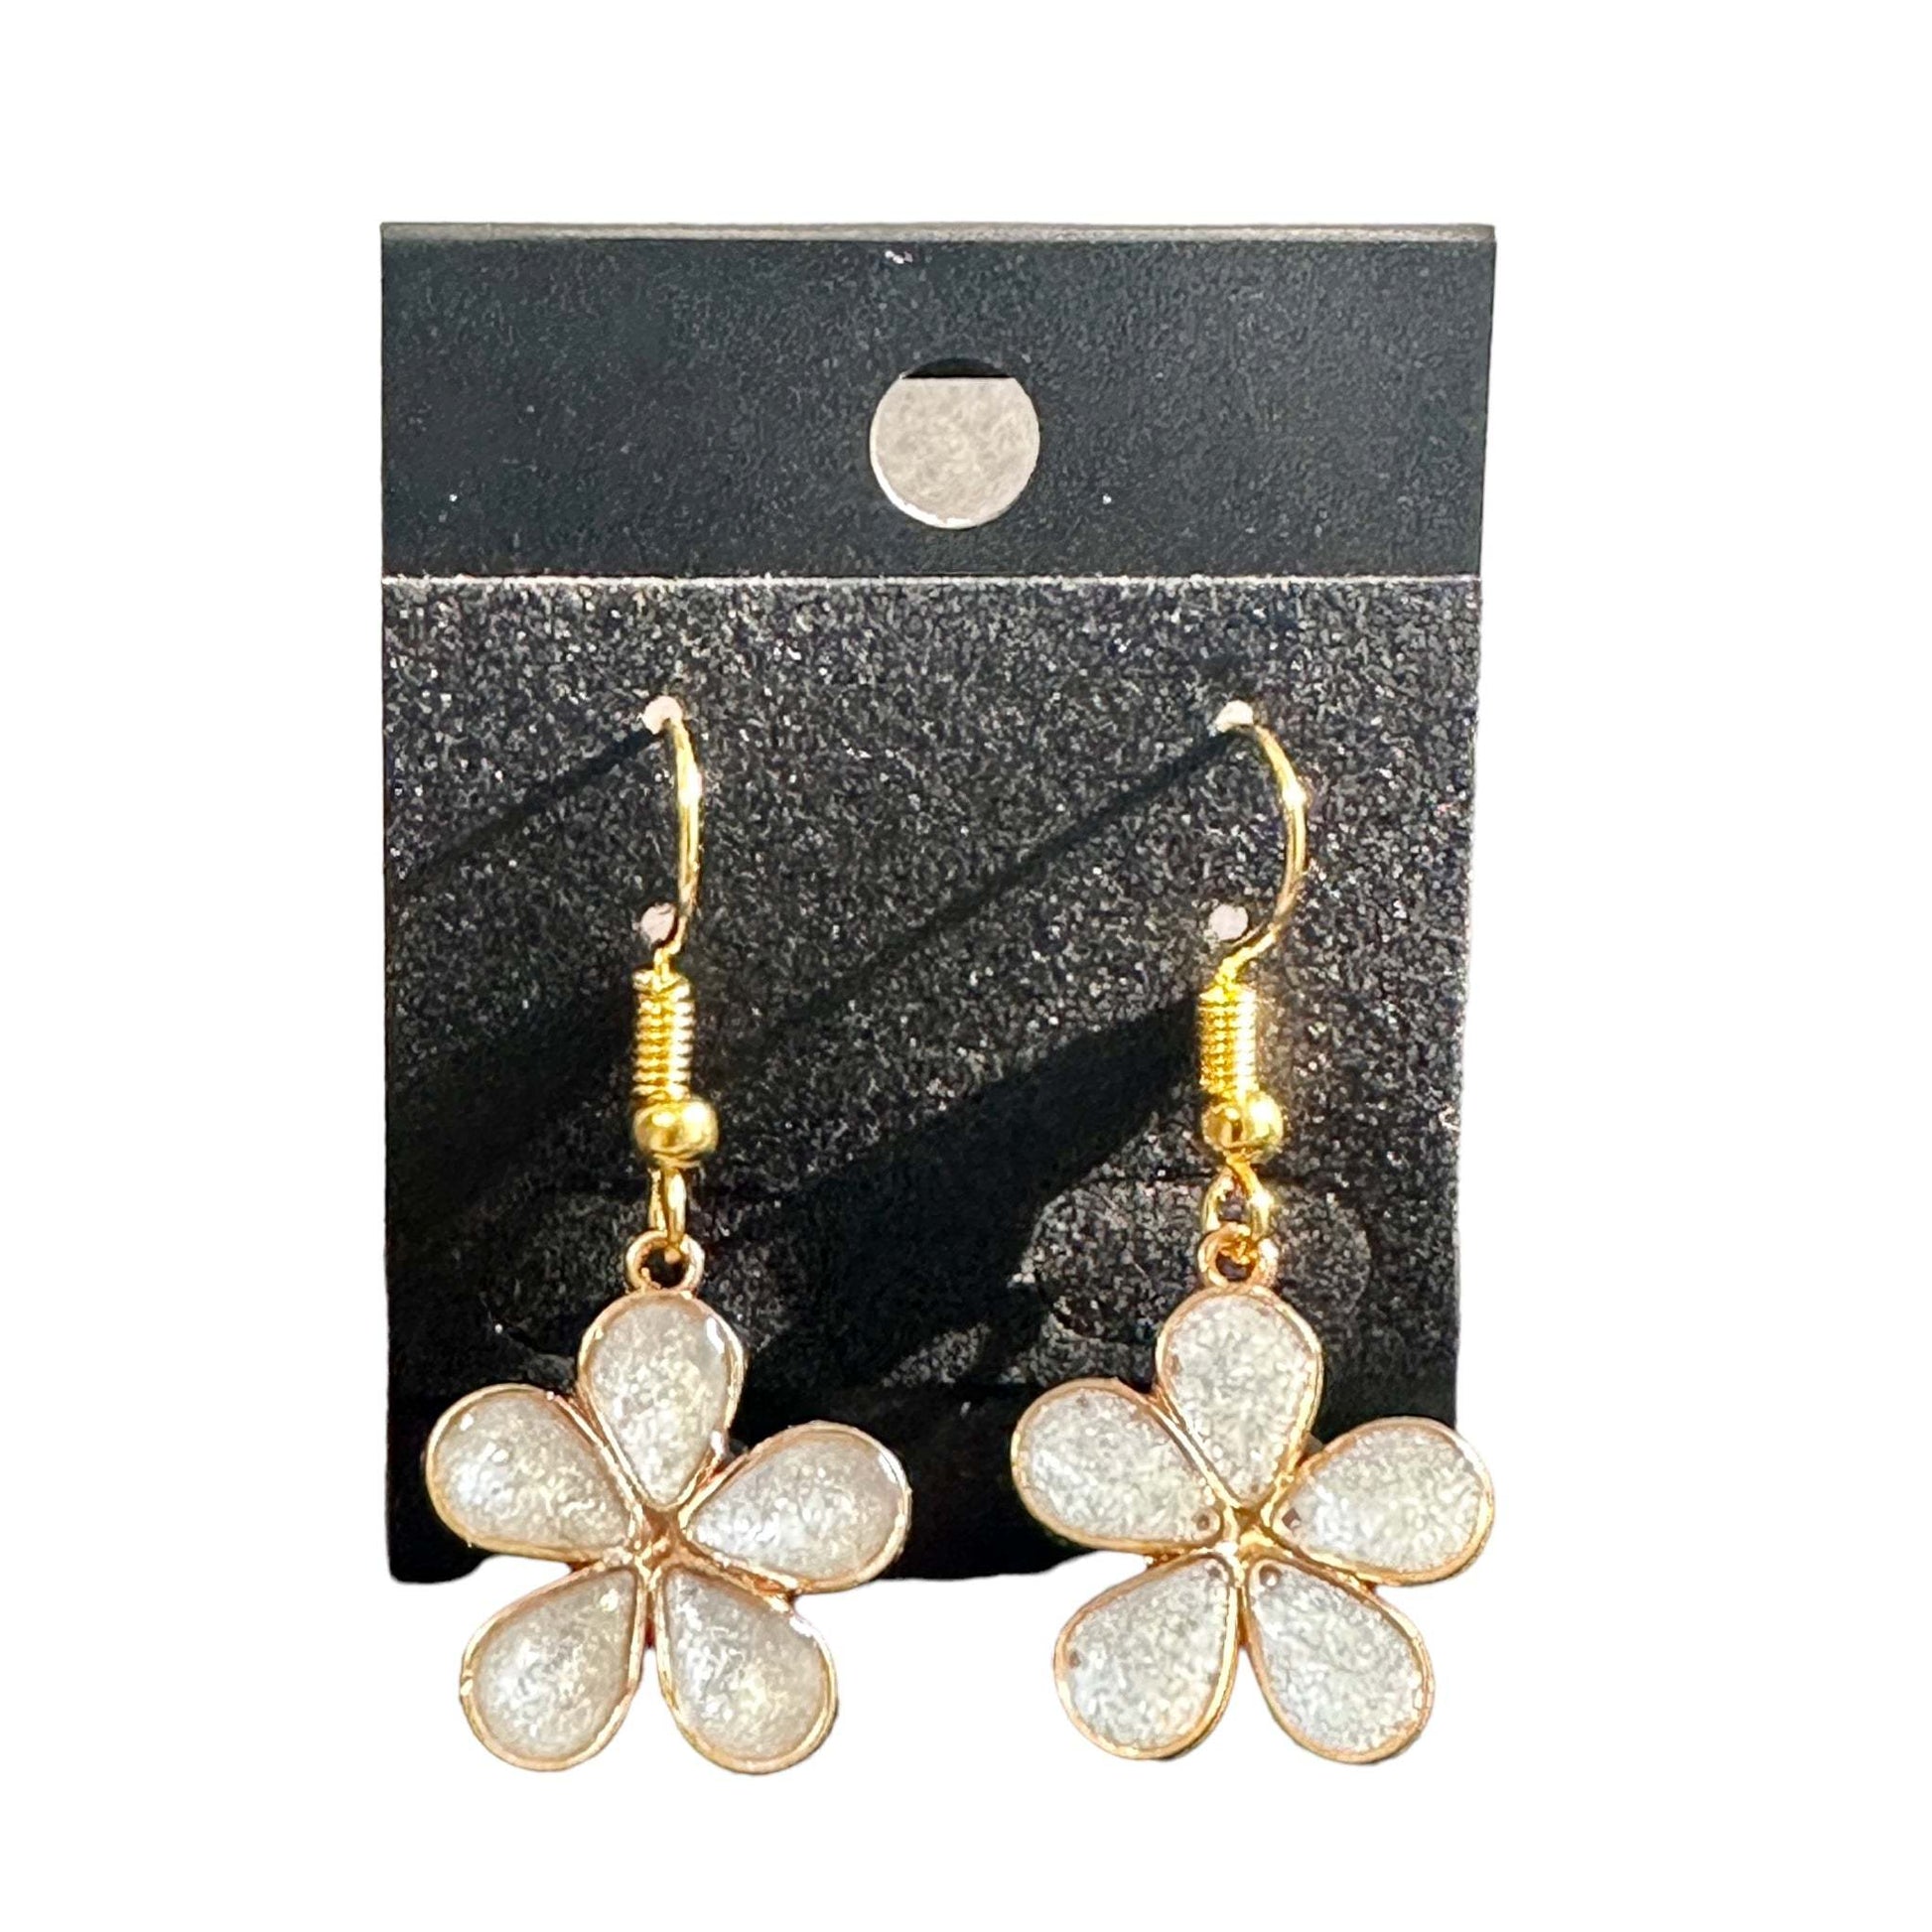 Earring Handmade Resin Flower Earring Set- White Petals & Glitter